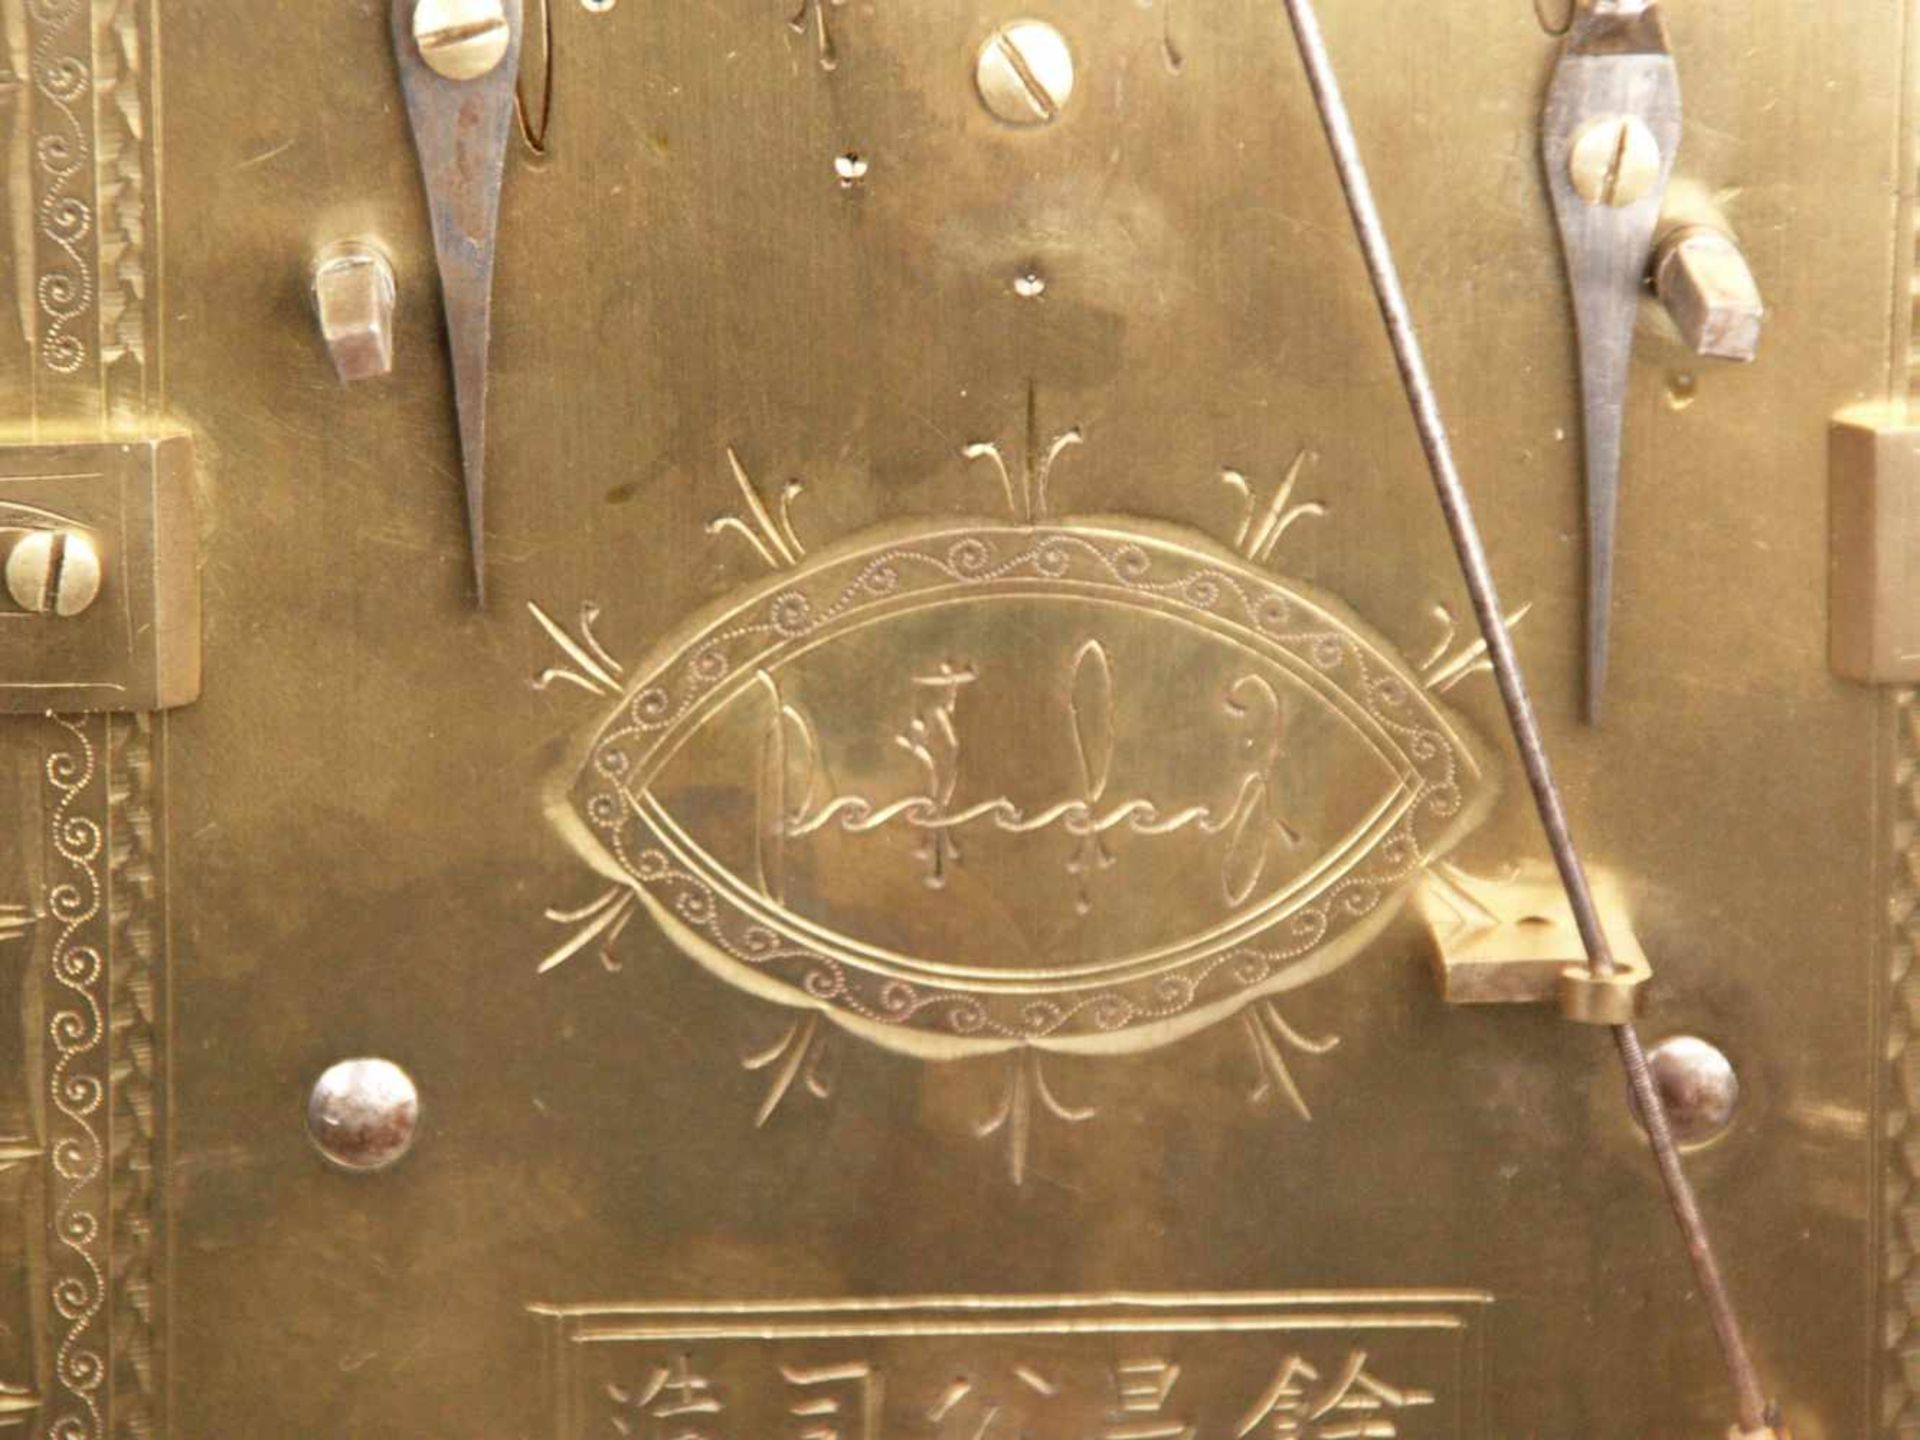 Tischuhr - China, 2-teiliges Hartholzgehäuse, "Yuchang company", Perlmuttintarsien, durchbrochen - Bild 17 aus 19